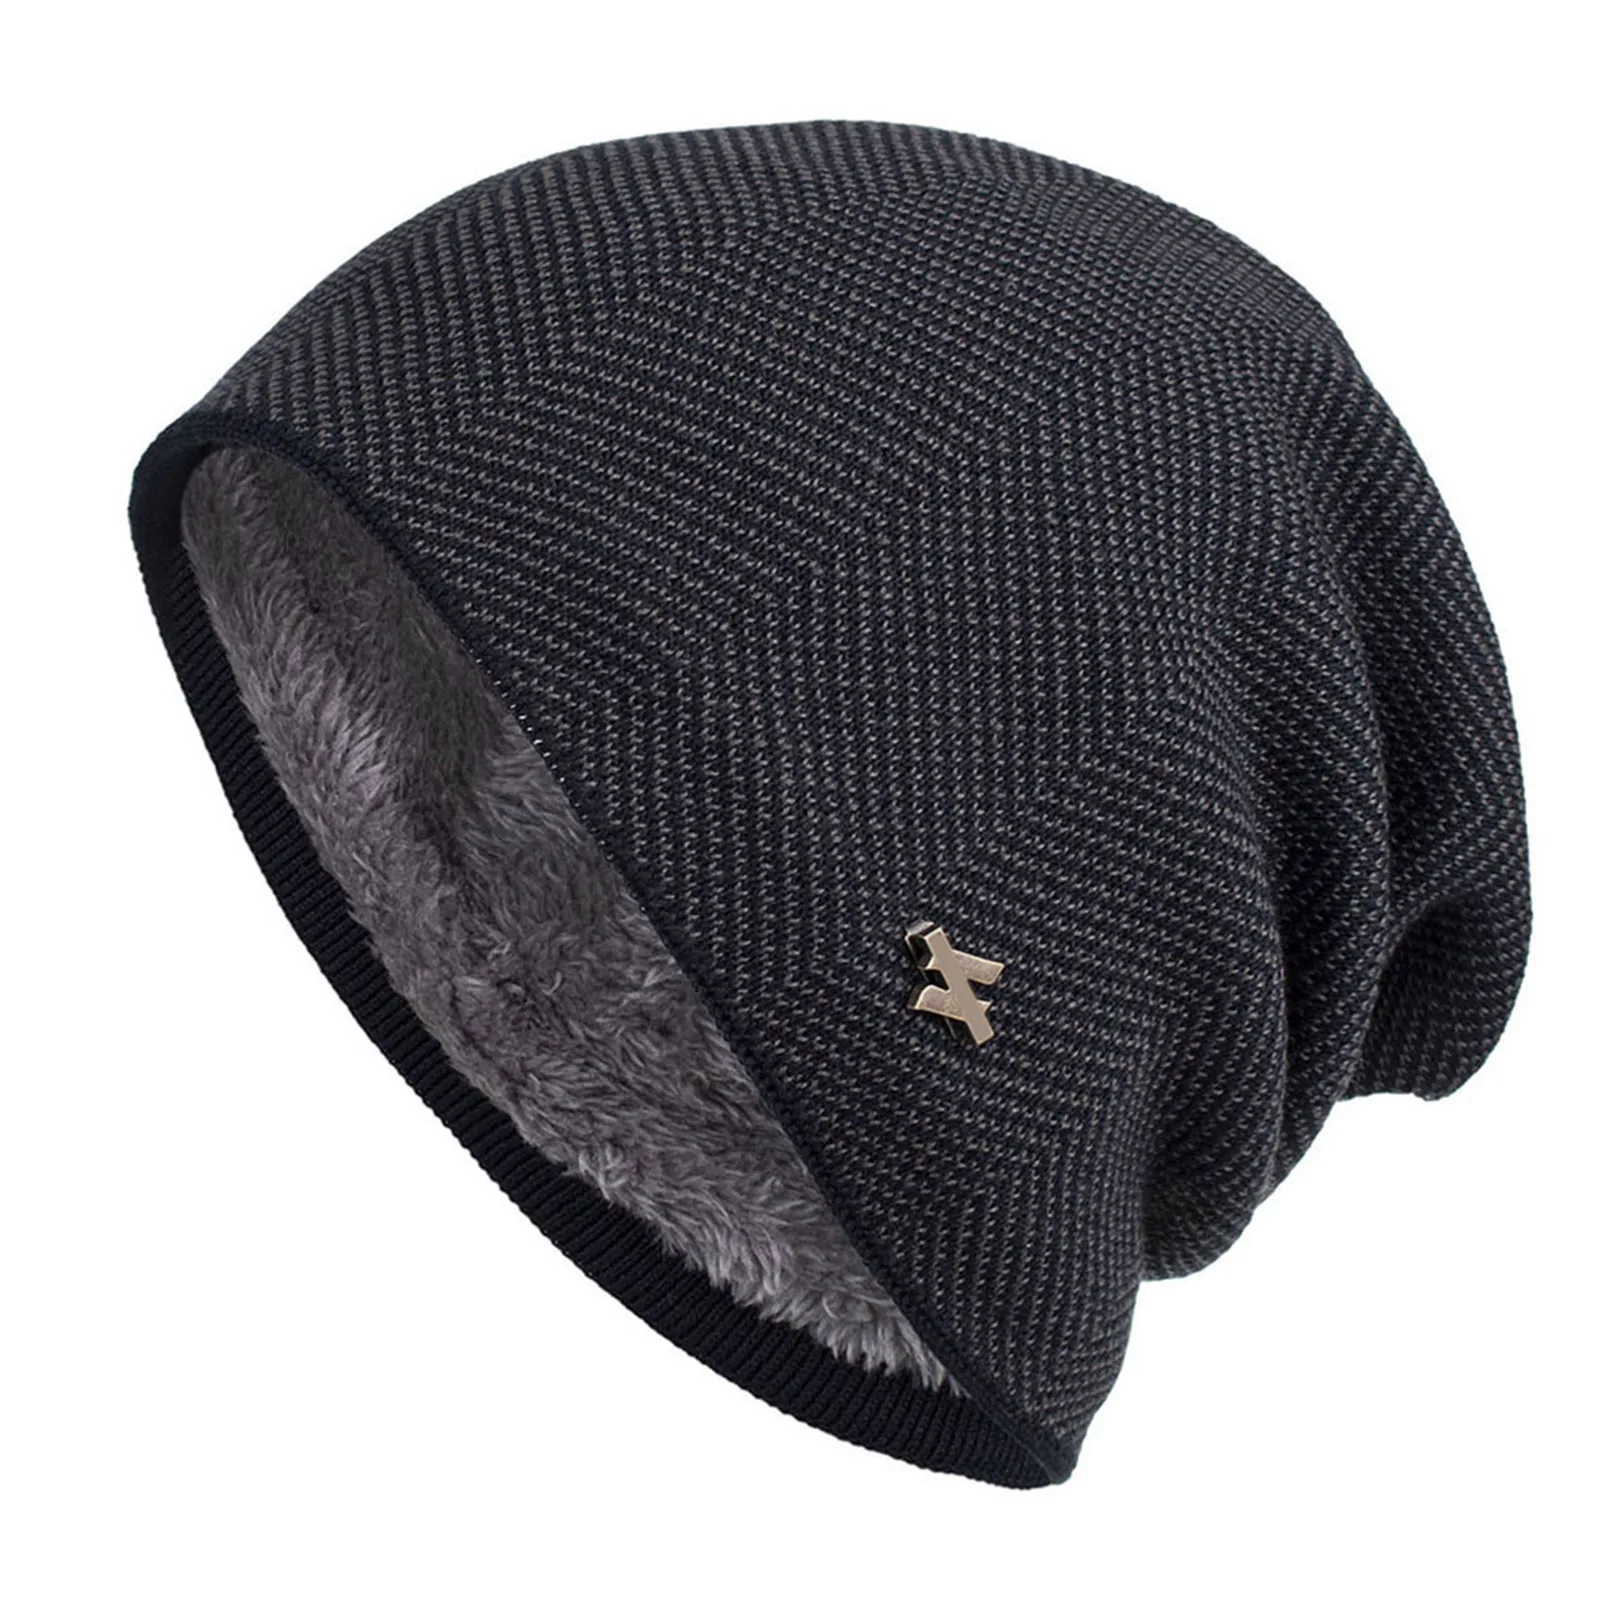 

Универсальная трикотажная шапка с манжетами и черепом, удобная шерстяная шапка сплошного цвета для холодной погоды, обогреватель для головы